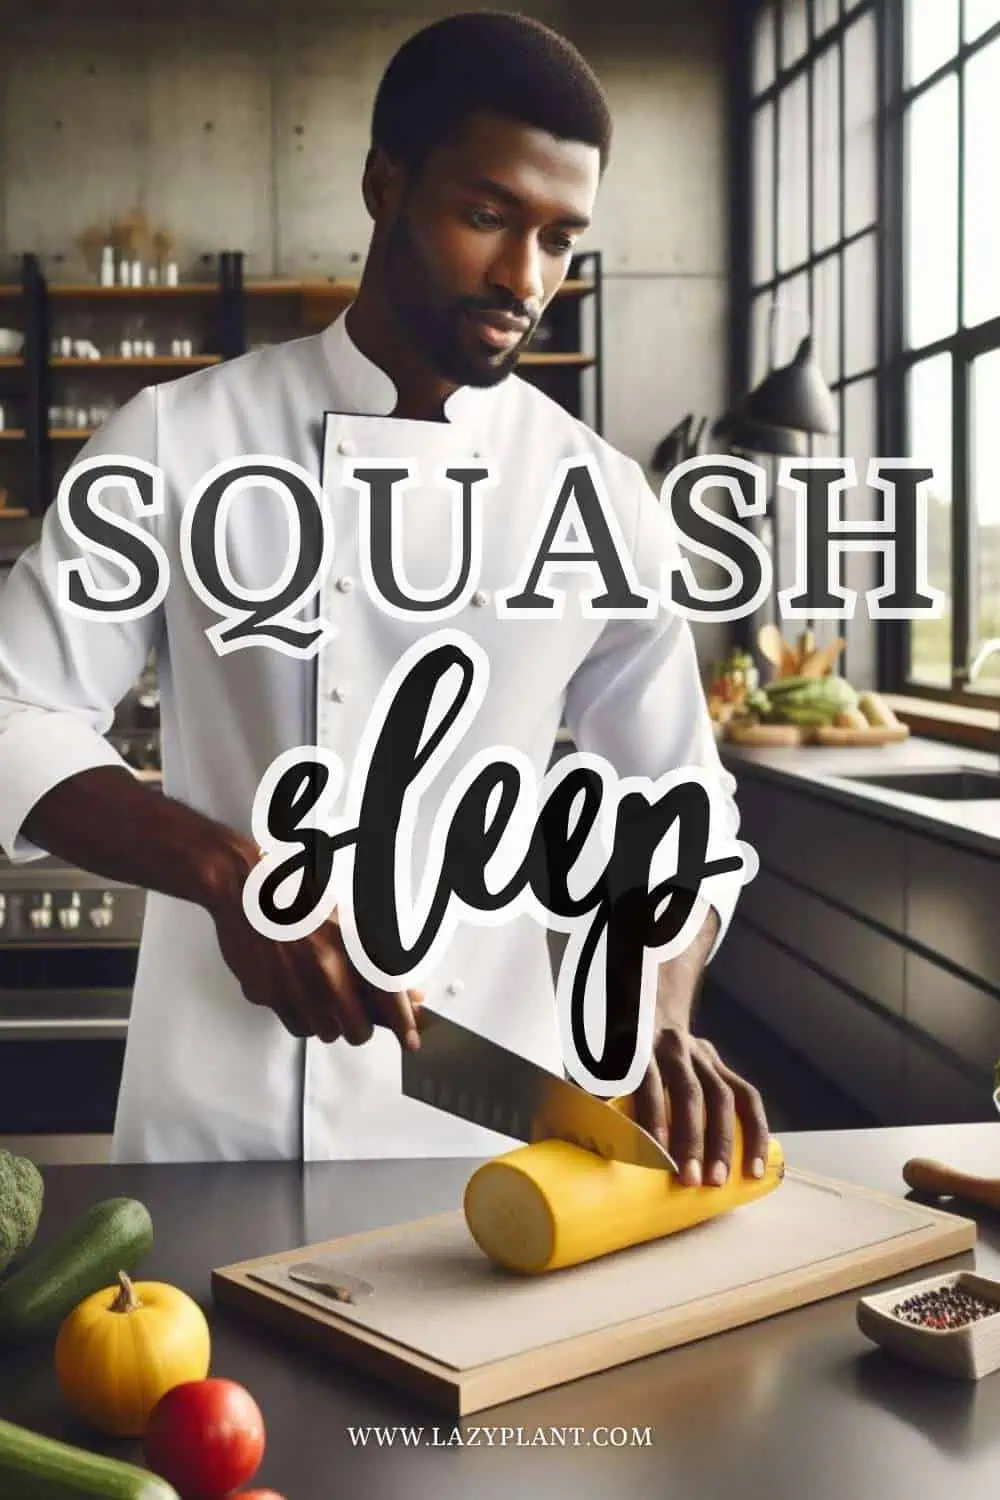 Eat Squash at Dinner for better Sleep